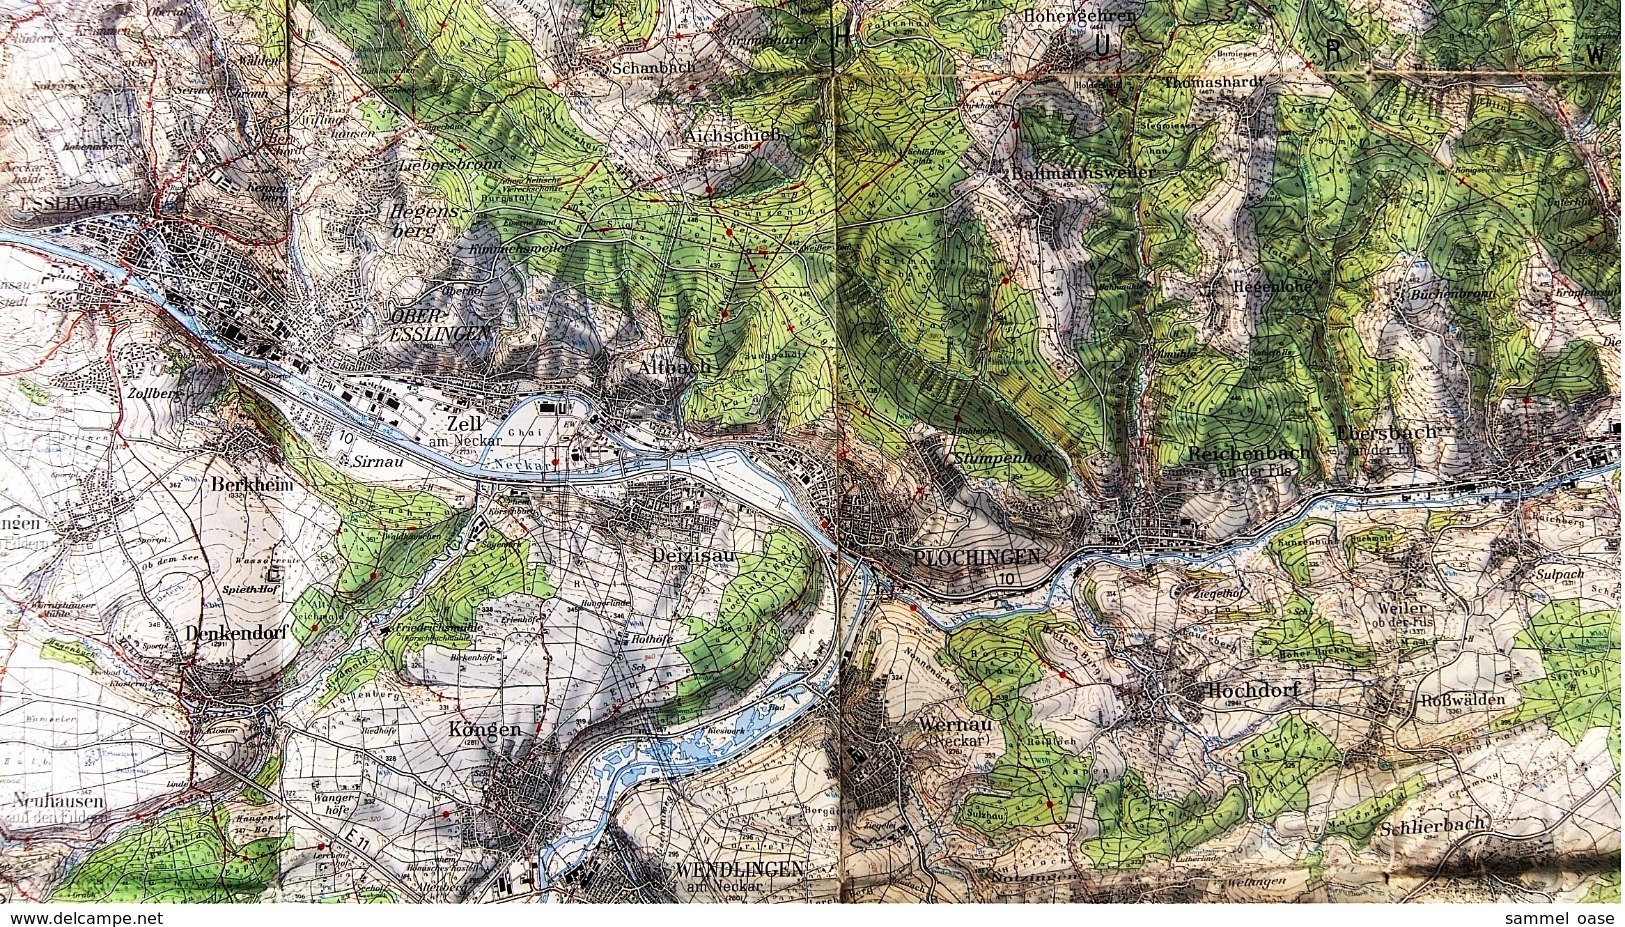 Topographische Karte  - Stuttgart Und Umgebung  -  Ausgabe Mit Wanderwegen  -  Von 1968 - Maps Of The World